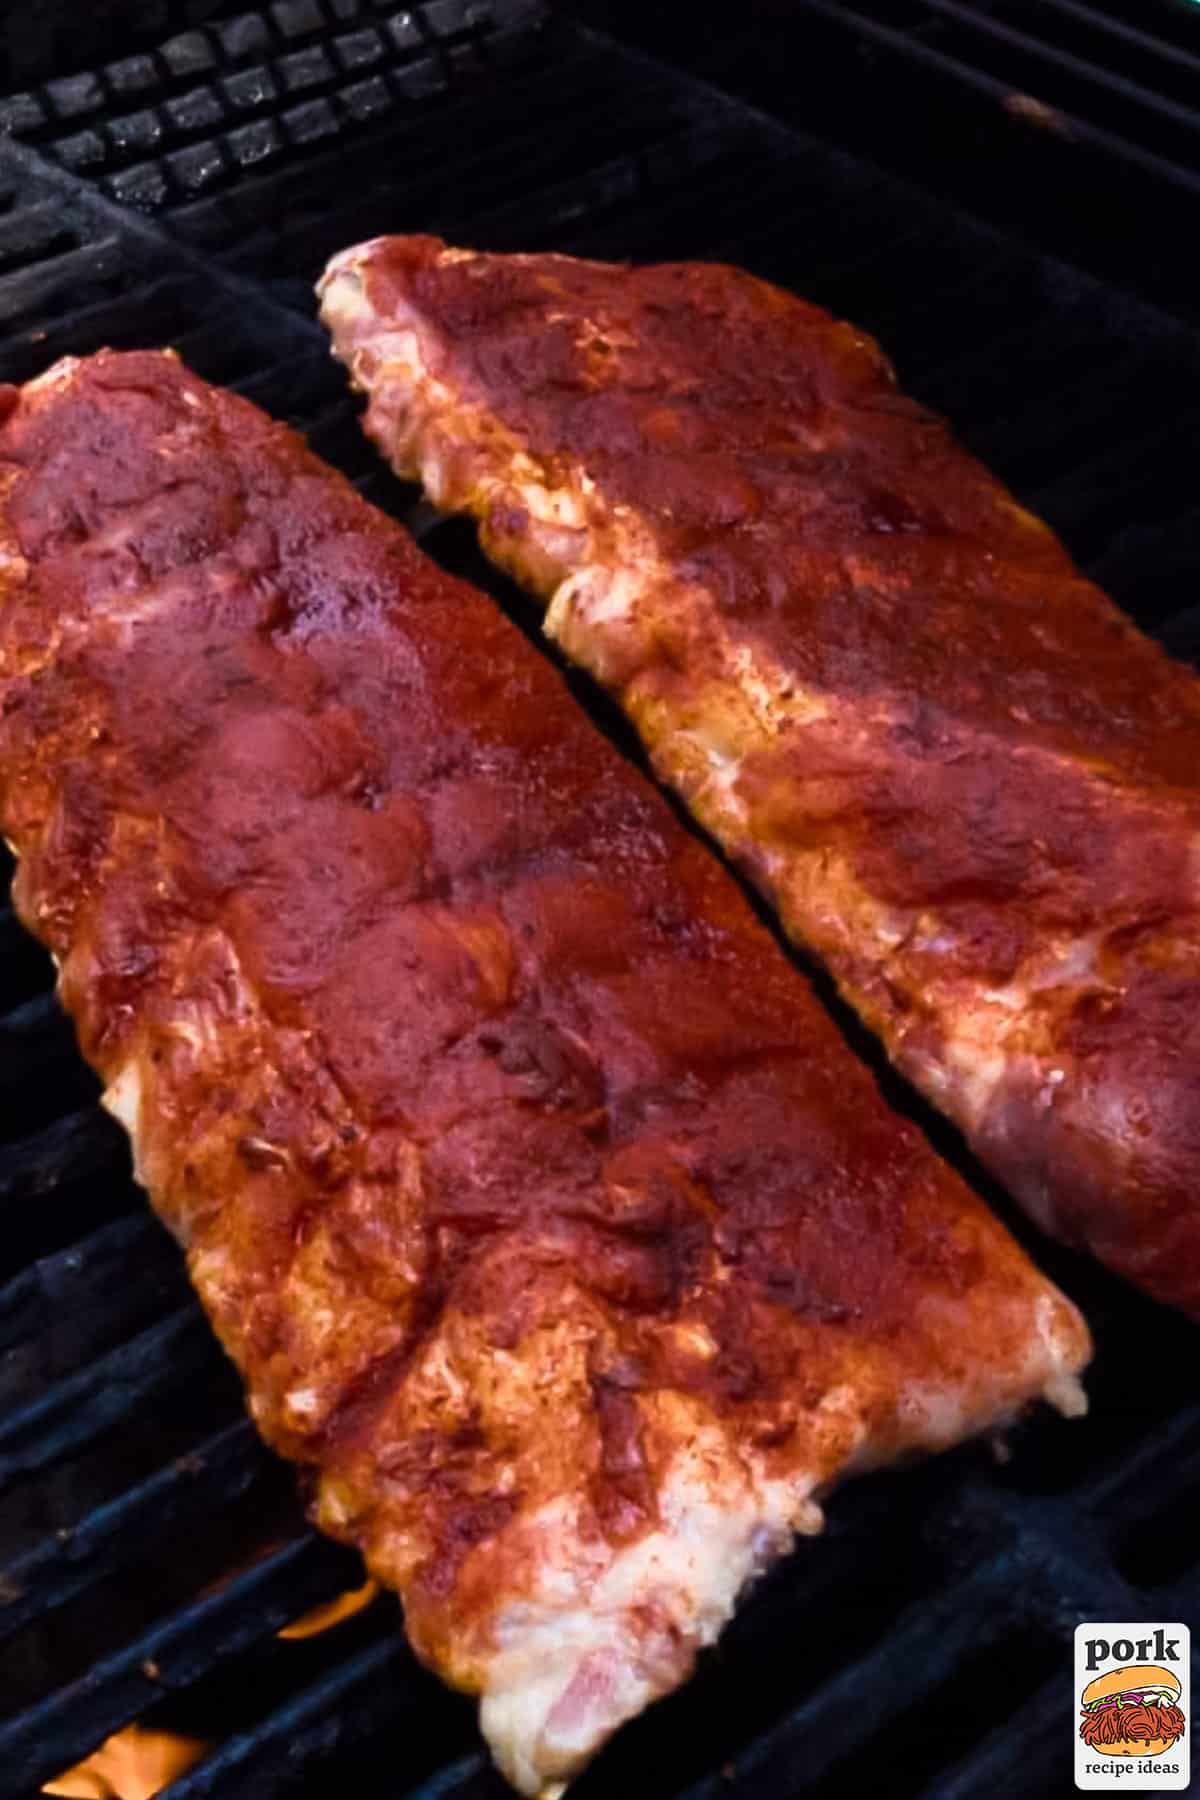 two seasoned pork rib racks on a grill